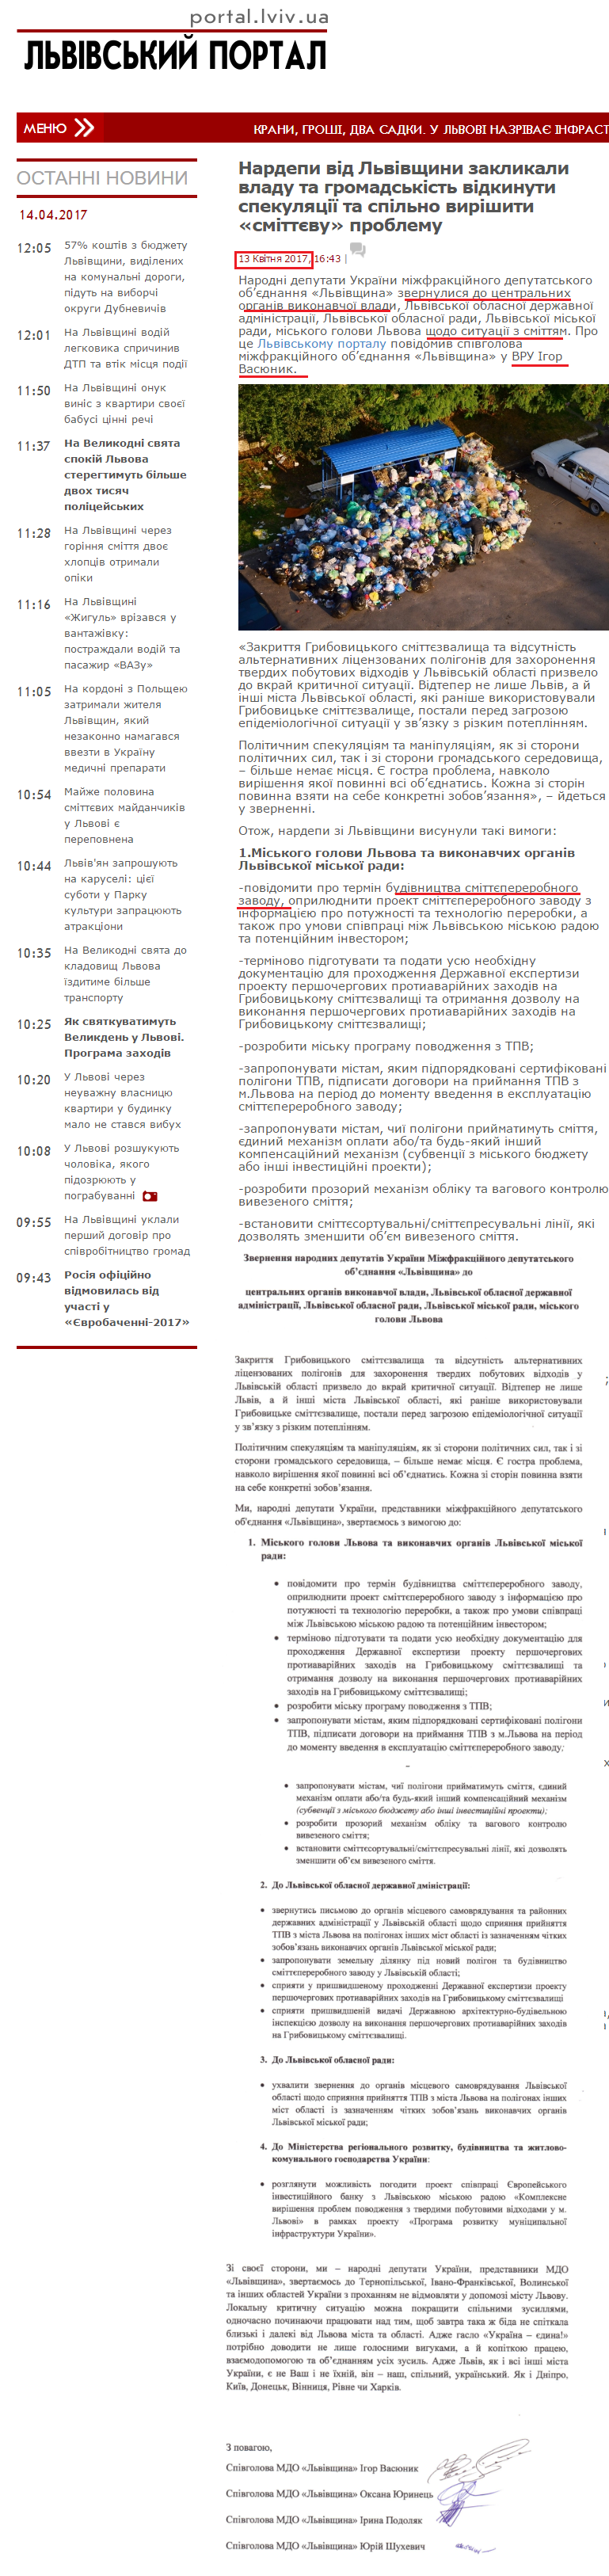 http://portal.lviv.ua/news/2017/04/13/nardepi-vid-lvivshhini-zaklikali-vladu-ta-gromadskist-vidkinuti-spekulyatsiyi-ta-spilno-virishiti-smittyevu-problemu